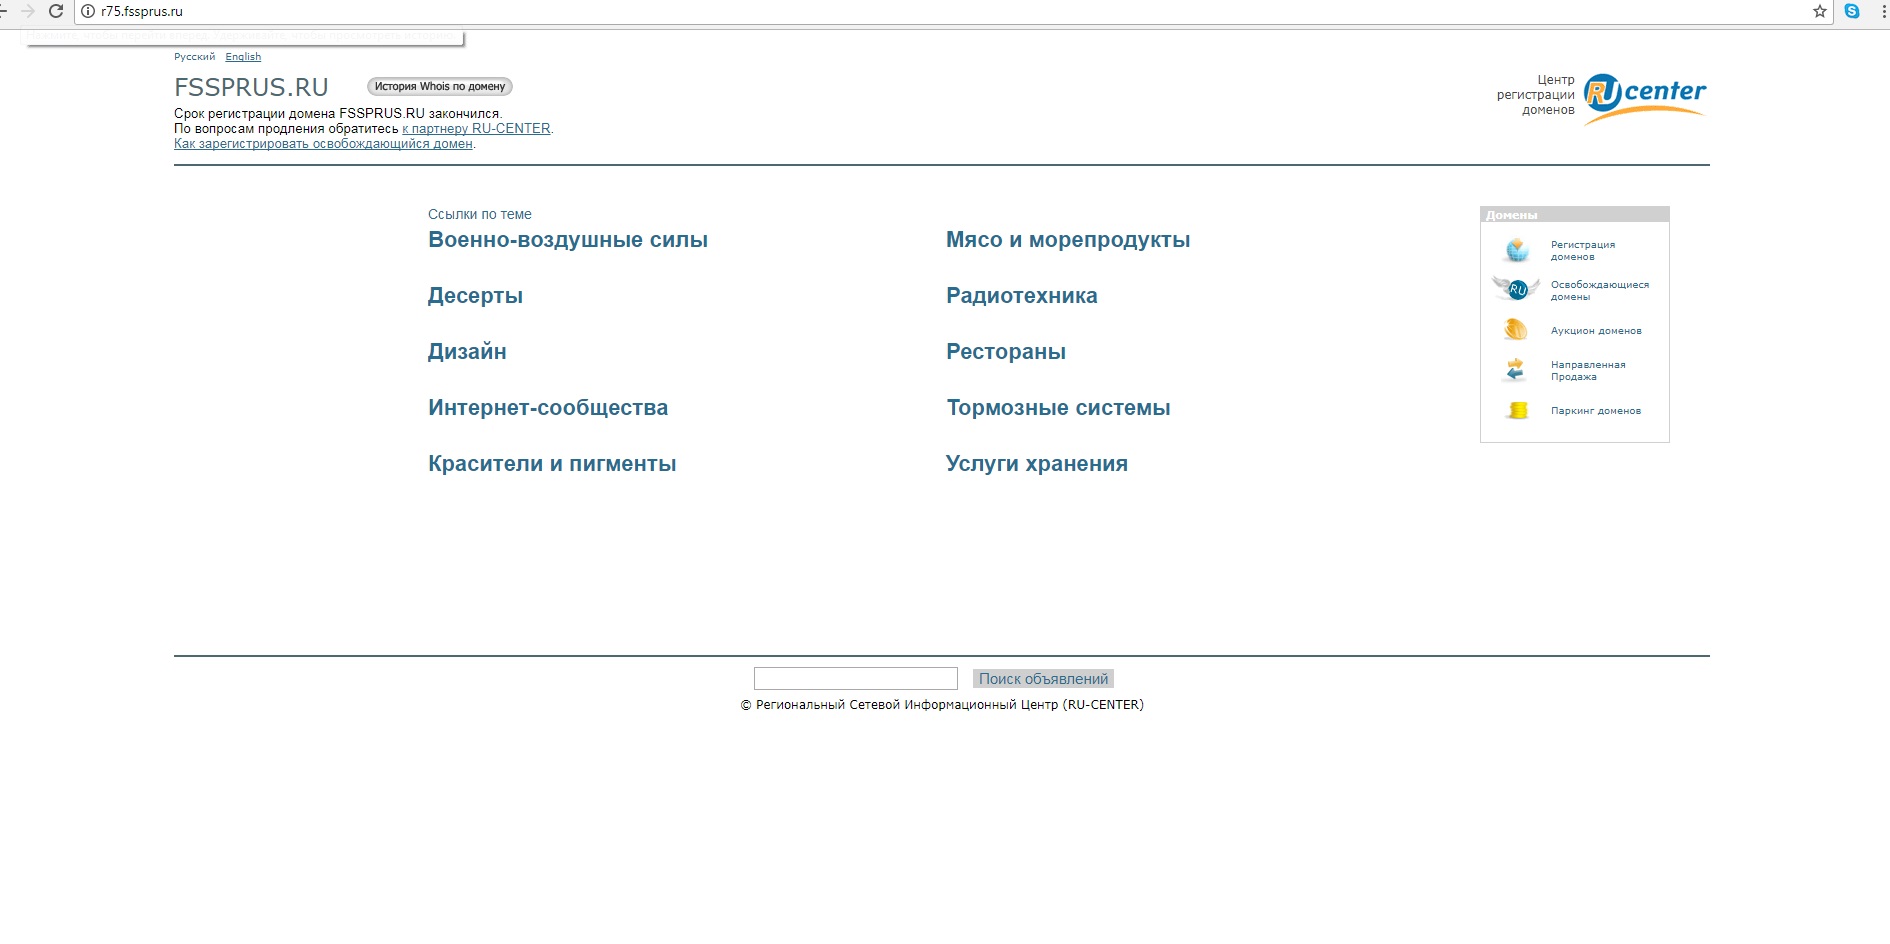 Сайты ФССП в Забайкалье и по всей стране отключили из-за неуплаты - источник